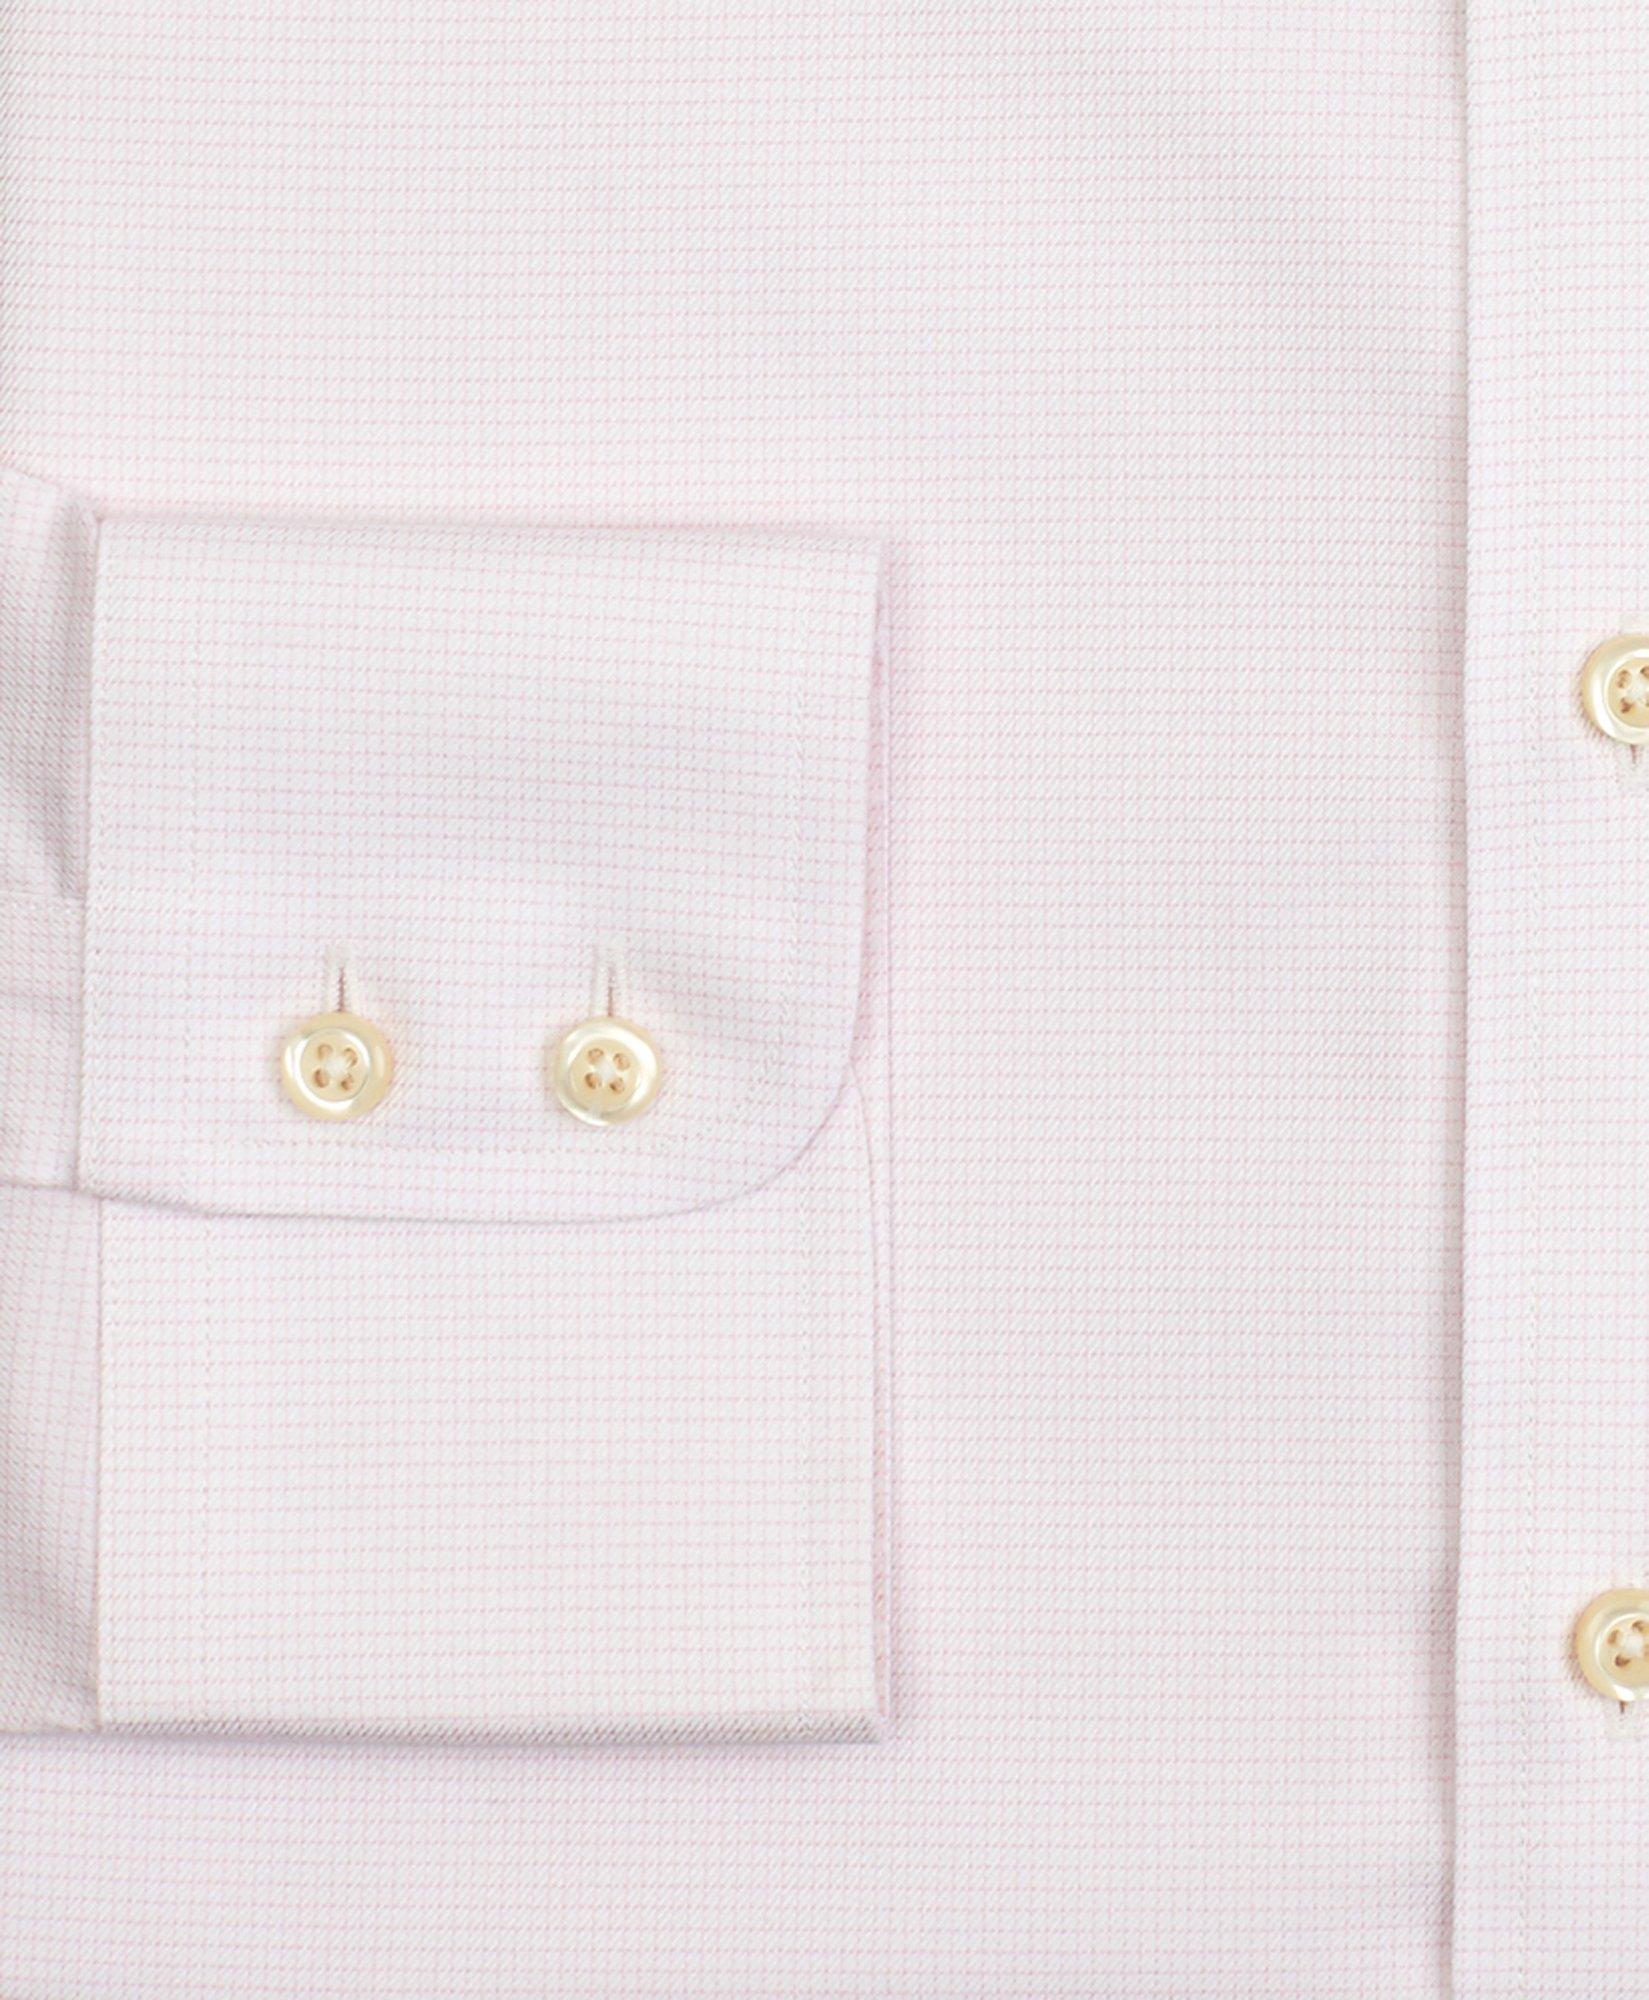 Button Cover for Tuxedo Shirt Collar – DeMoulin Bros. and Co.